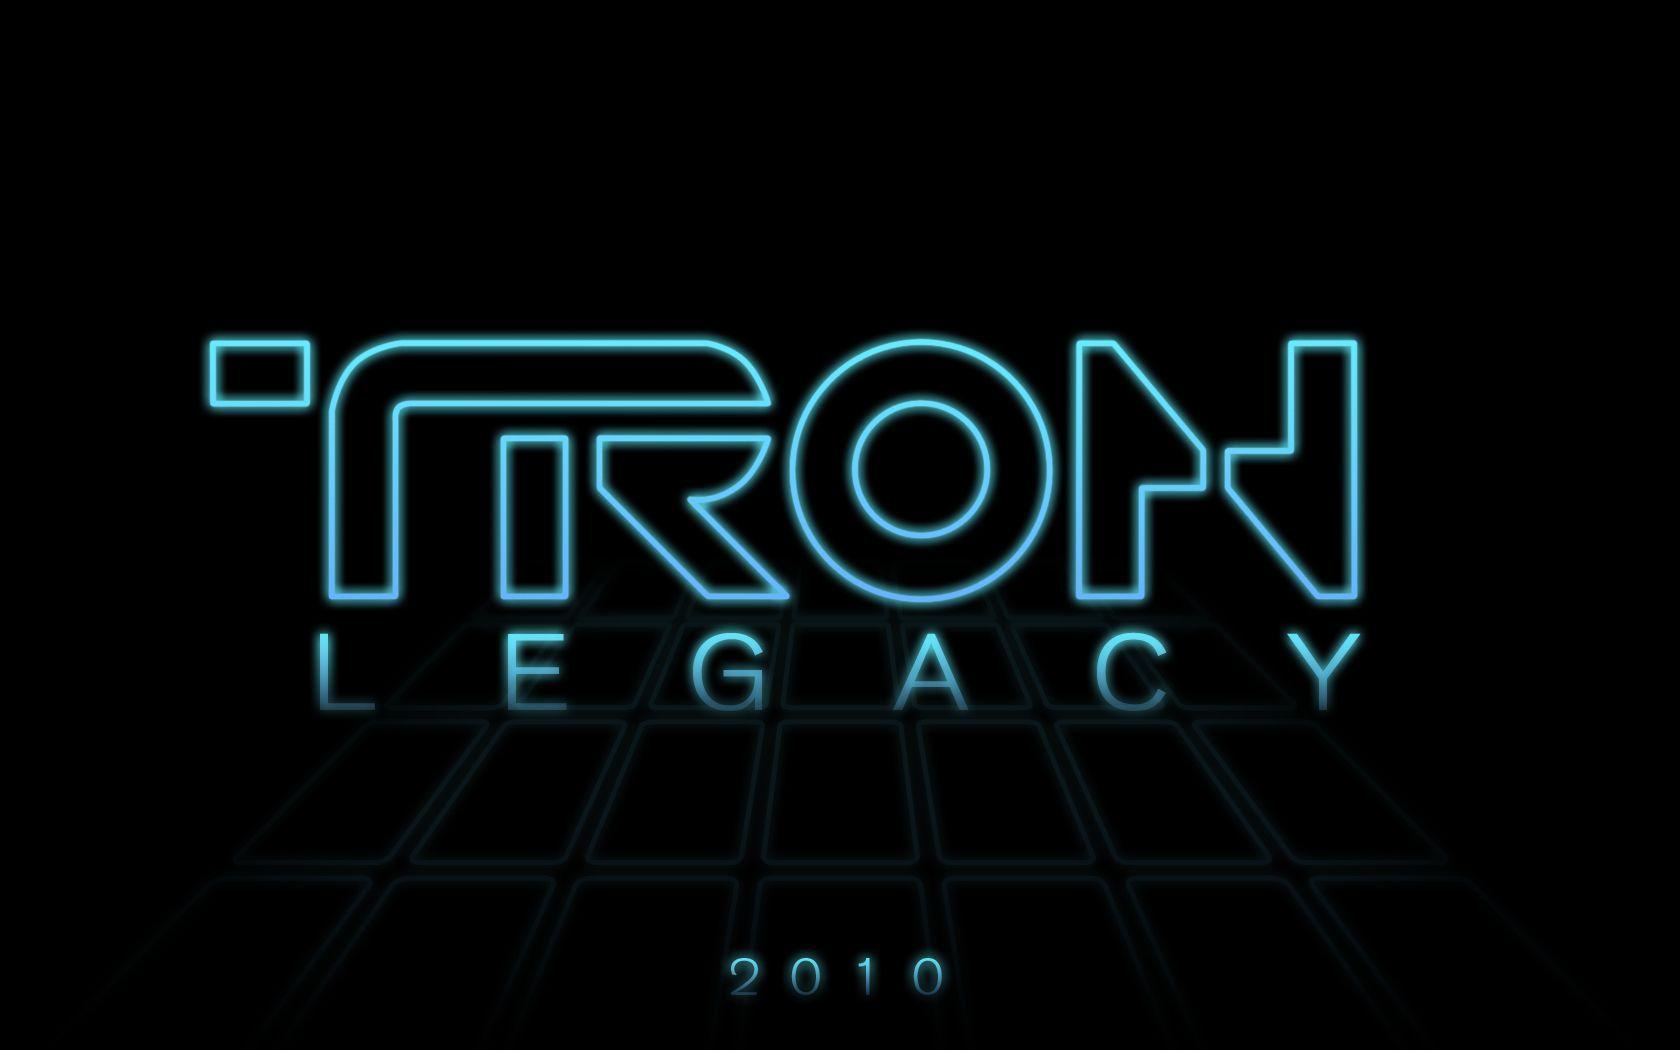 Tron Legacy Archives Wallpaper Free DownloadHD Wallpaper